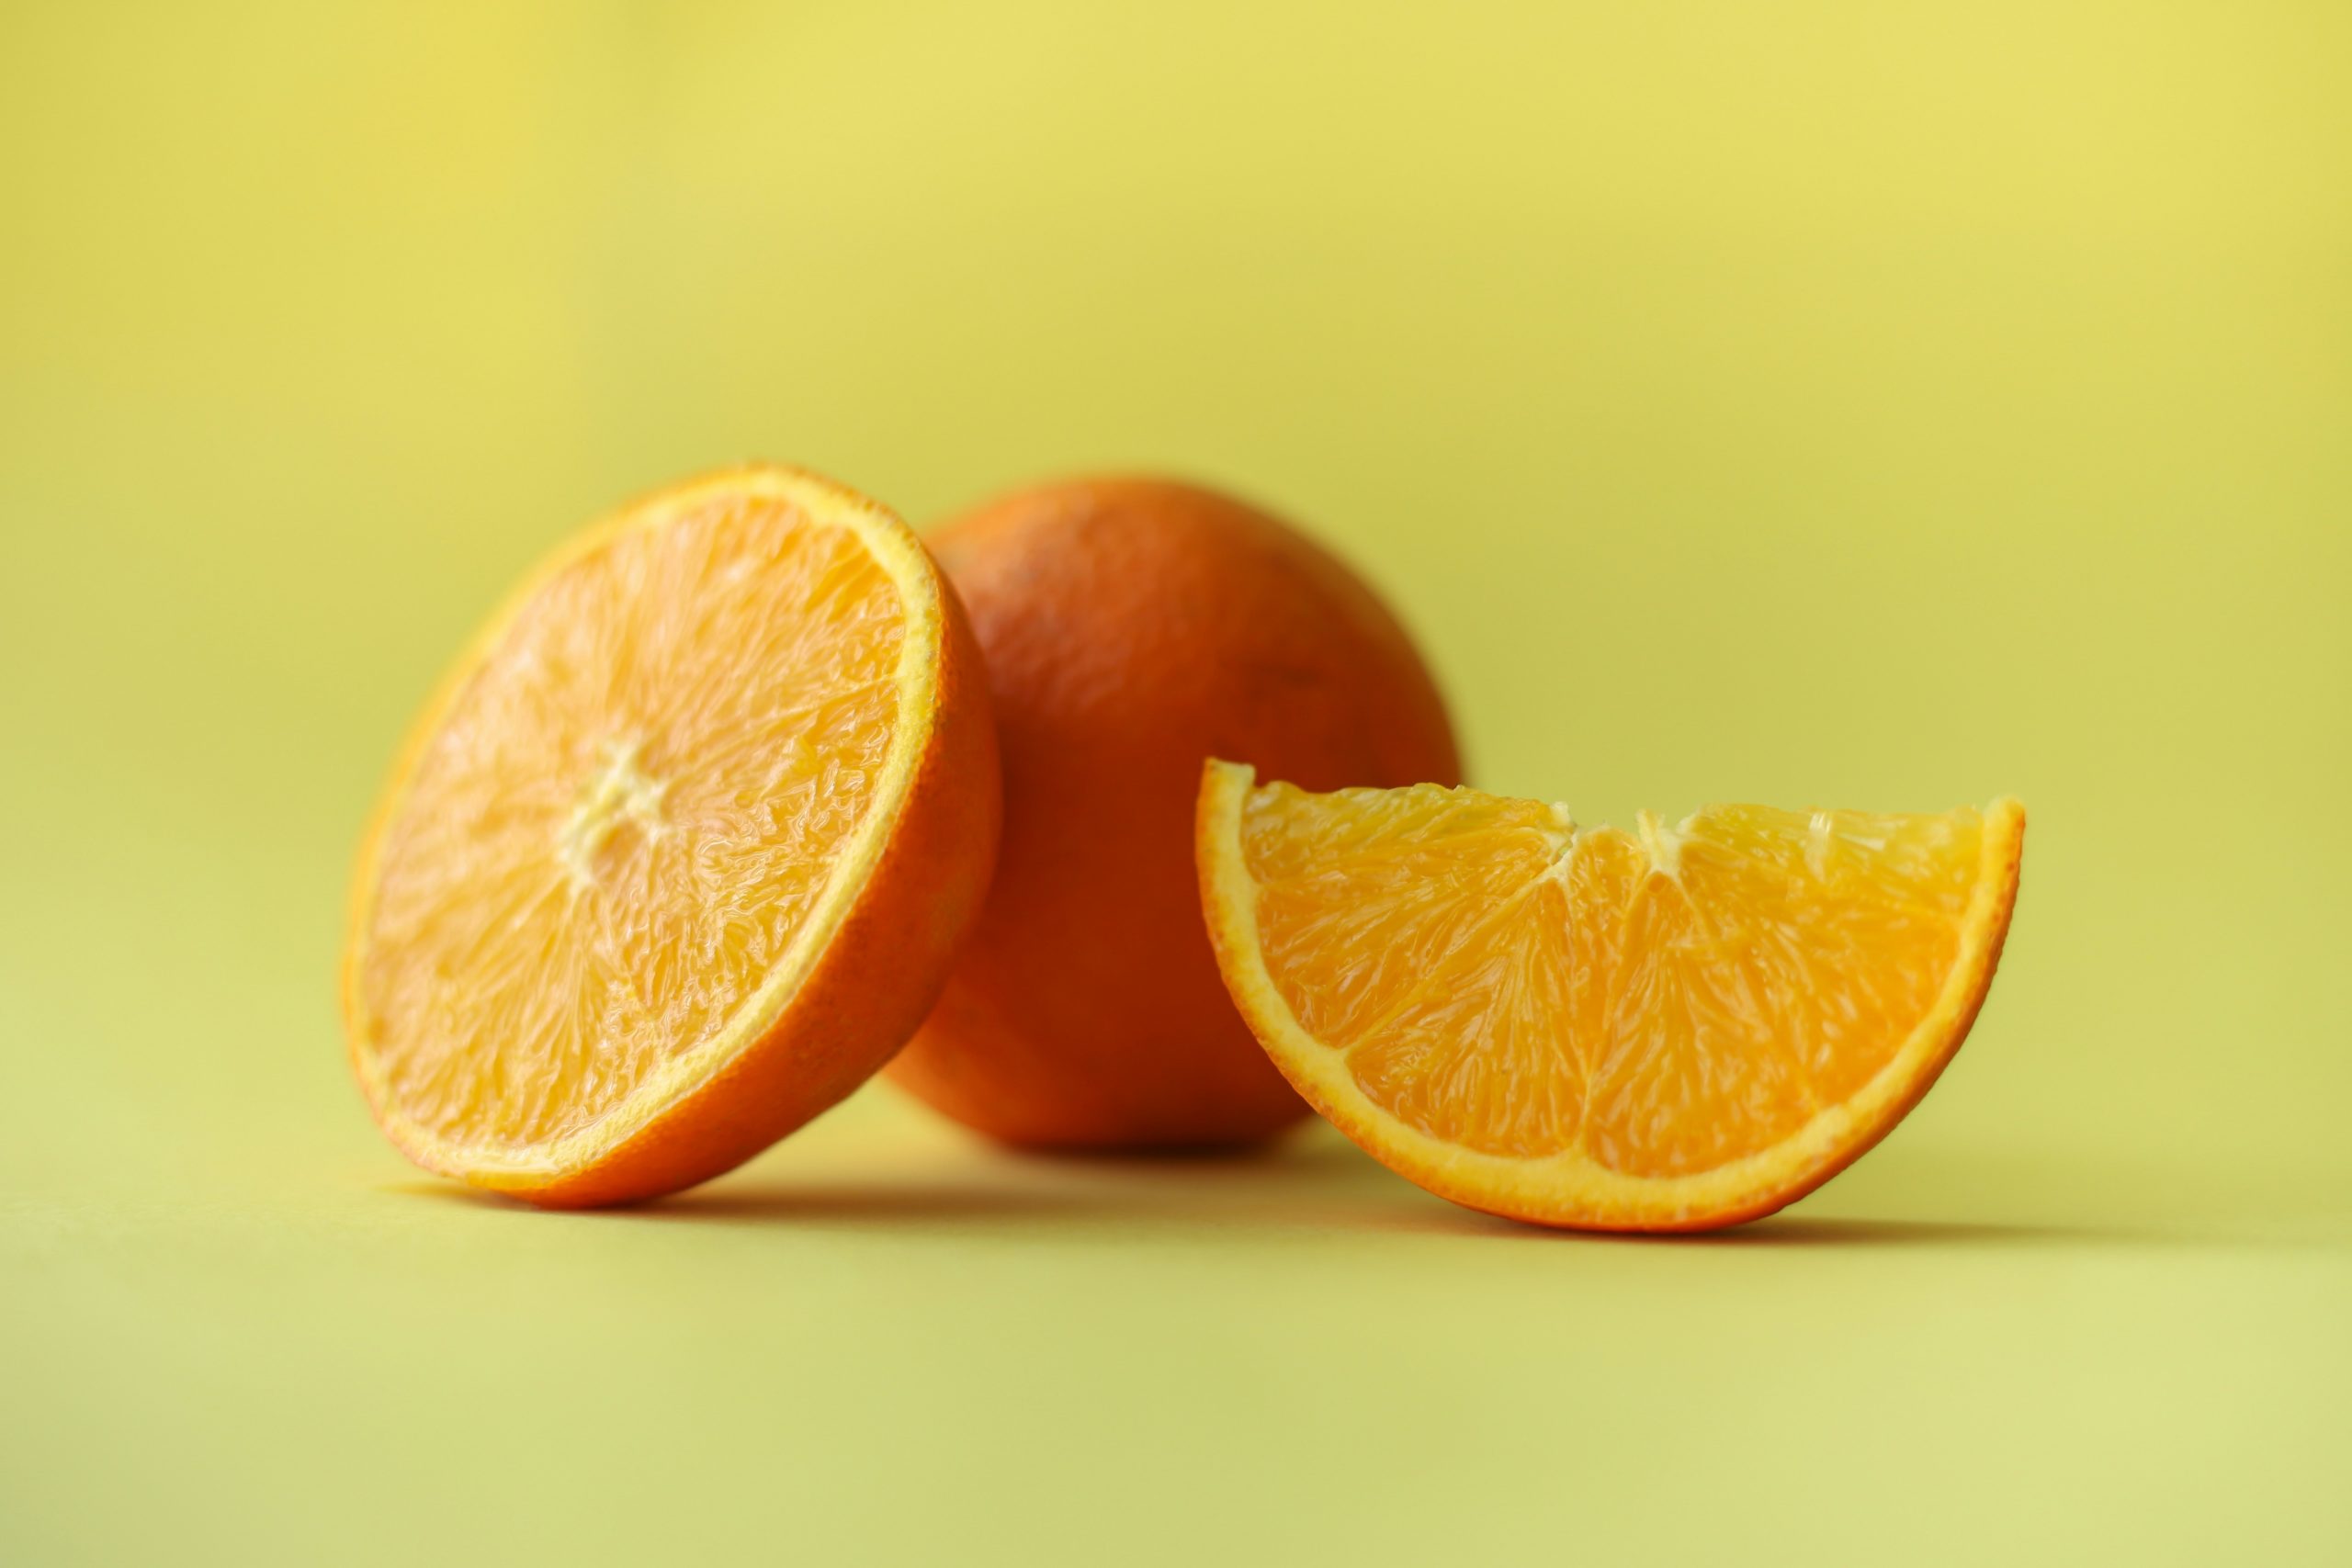 Orange juice for Detox smoothie recipe